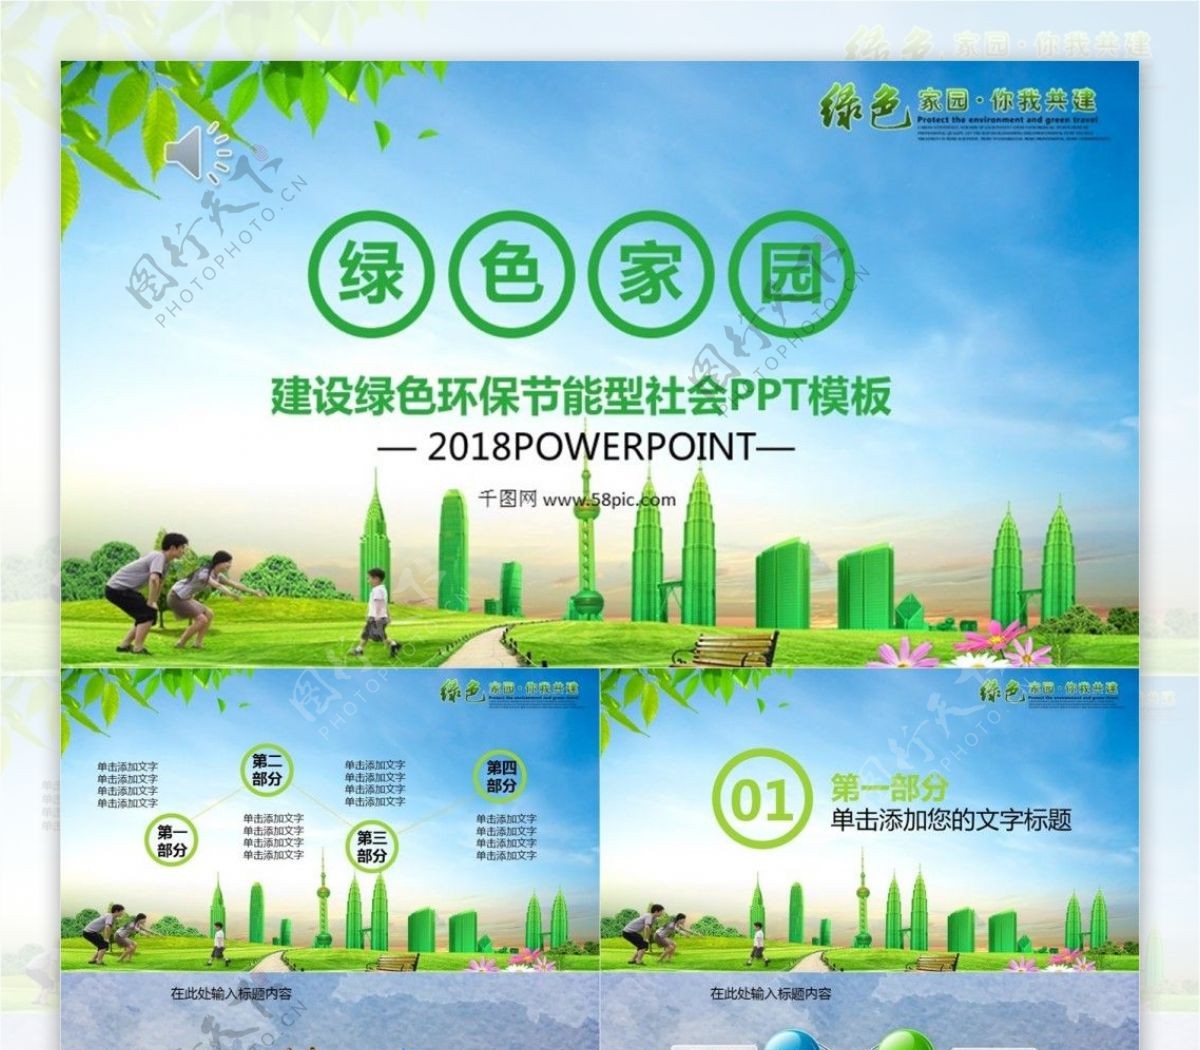 极简绿色低碳节能环保环境保护PPT模板